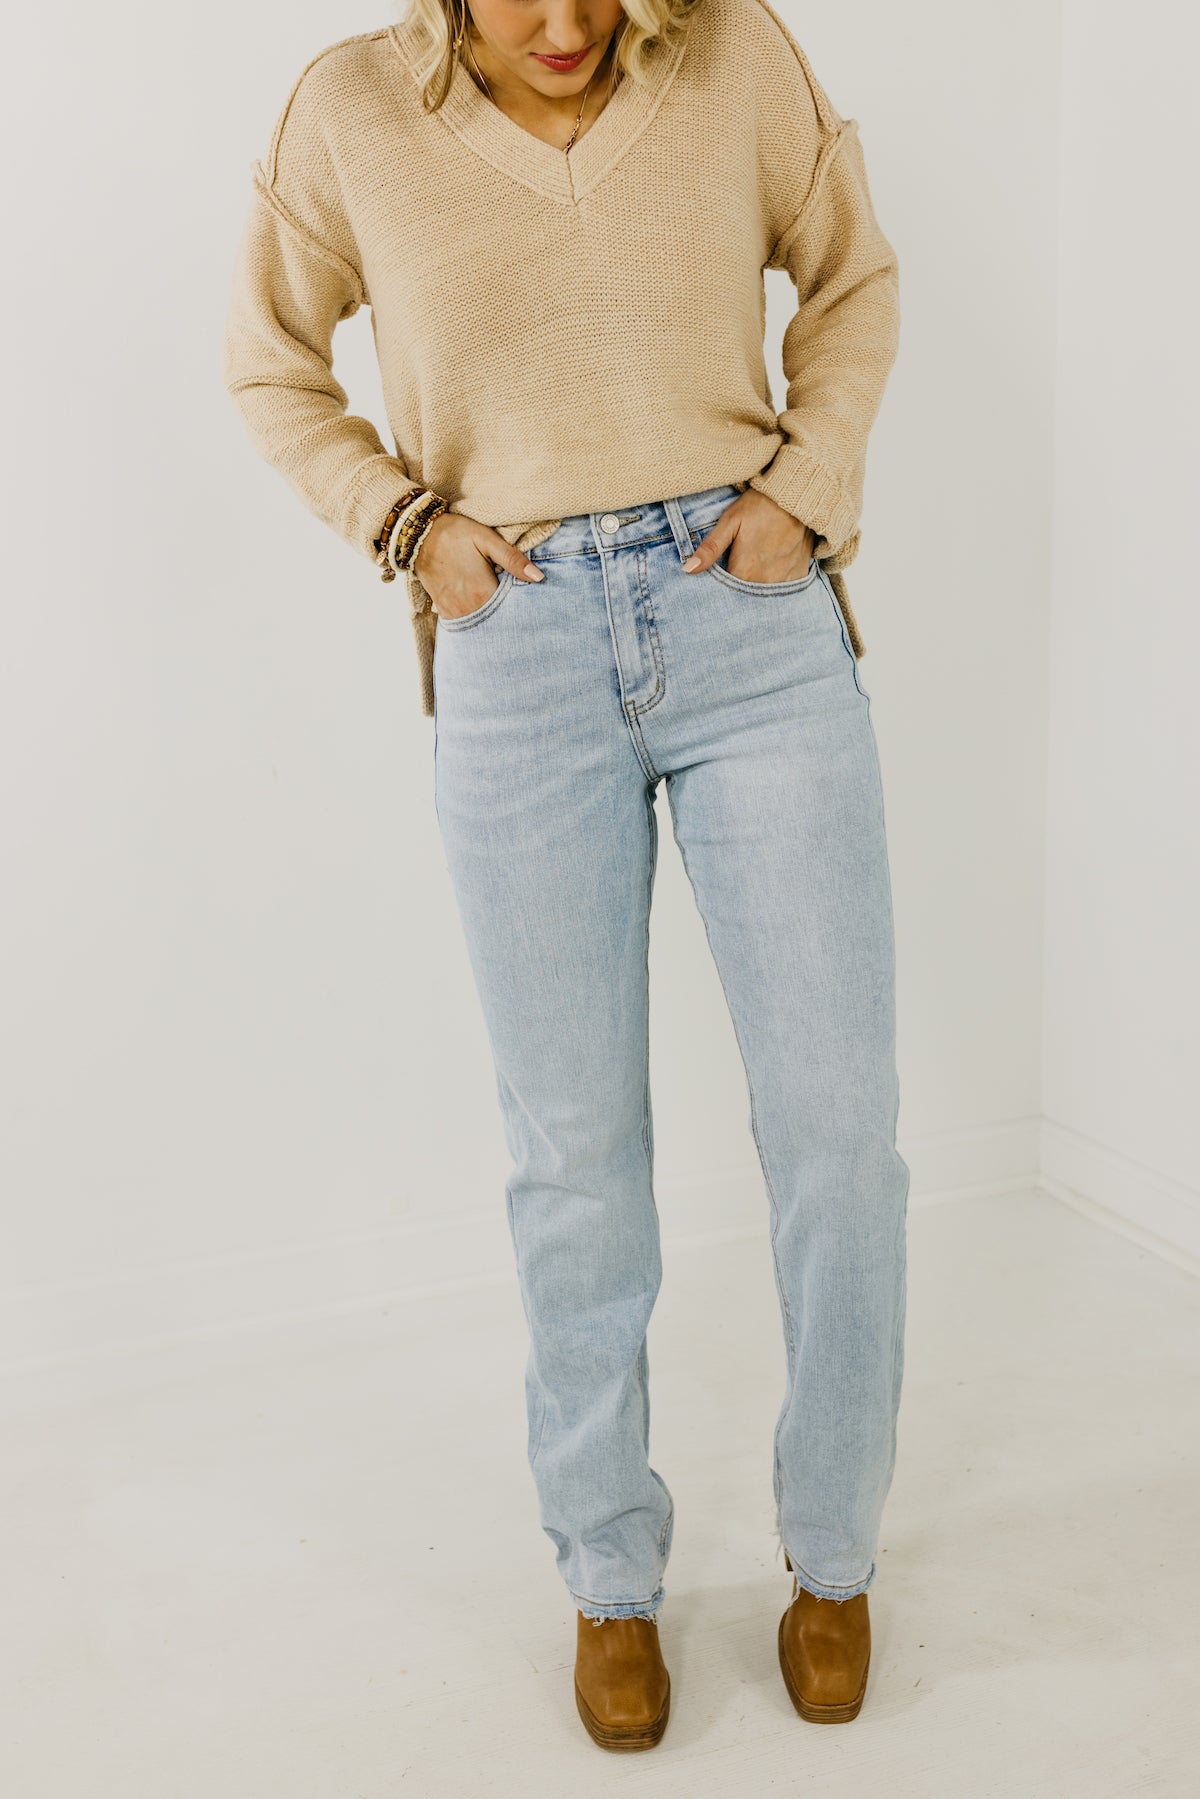 Lovervet by Vervet Denim | The Donnie 90's Vintage Straight Jeans